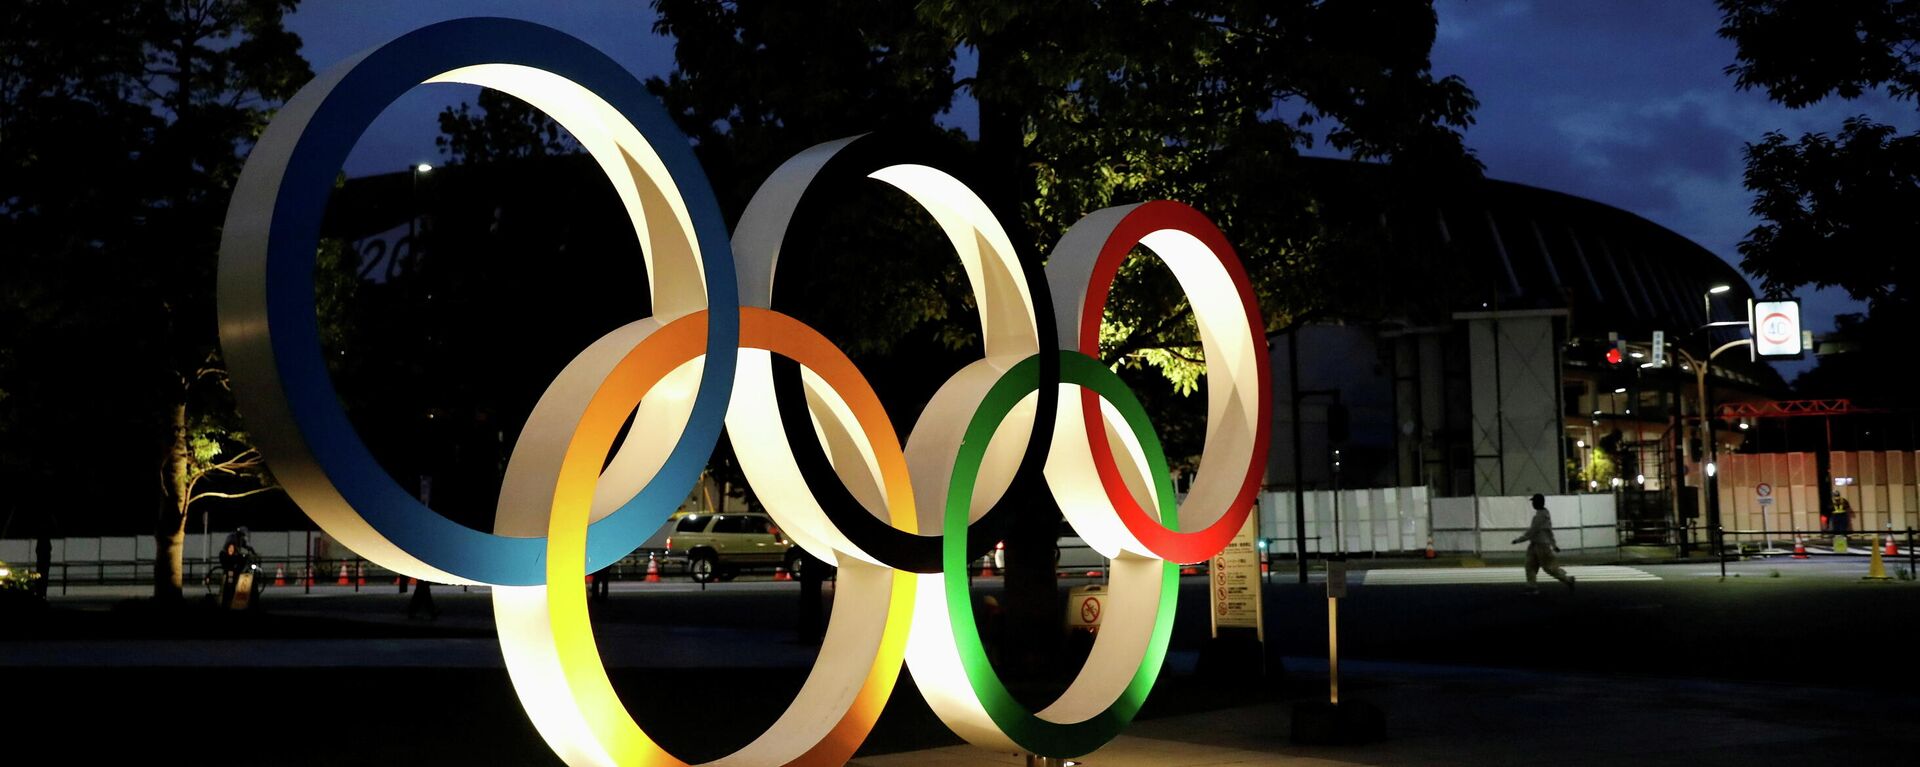 Скульптура Олимпийские кольца на Олимпийских играх 2020 в Токио - Sputnik Литва, 1920, 09.07.2021